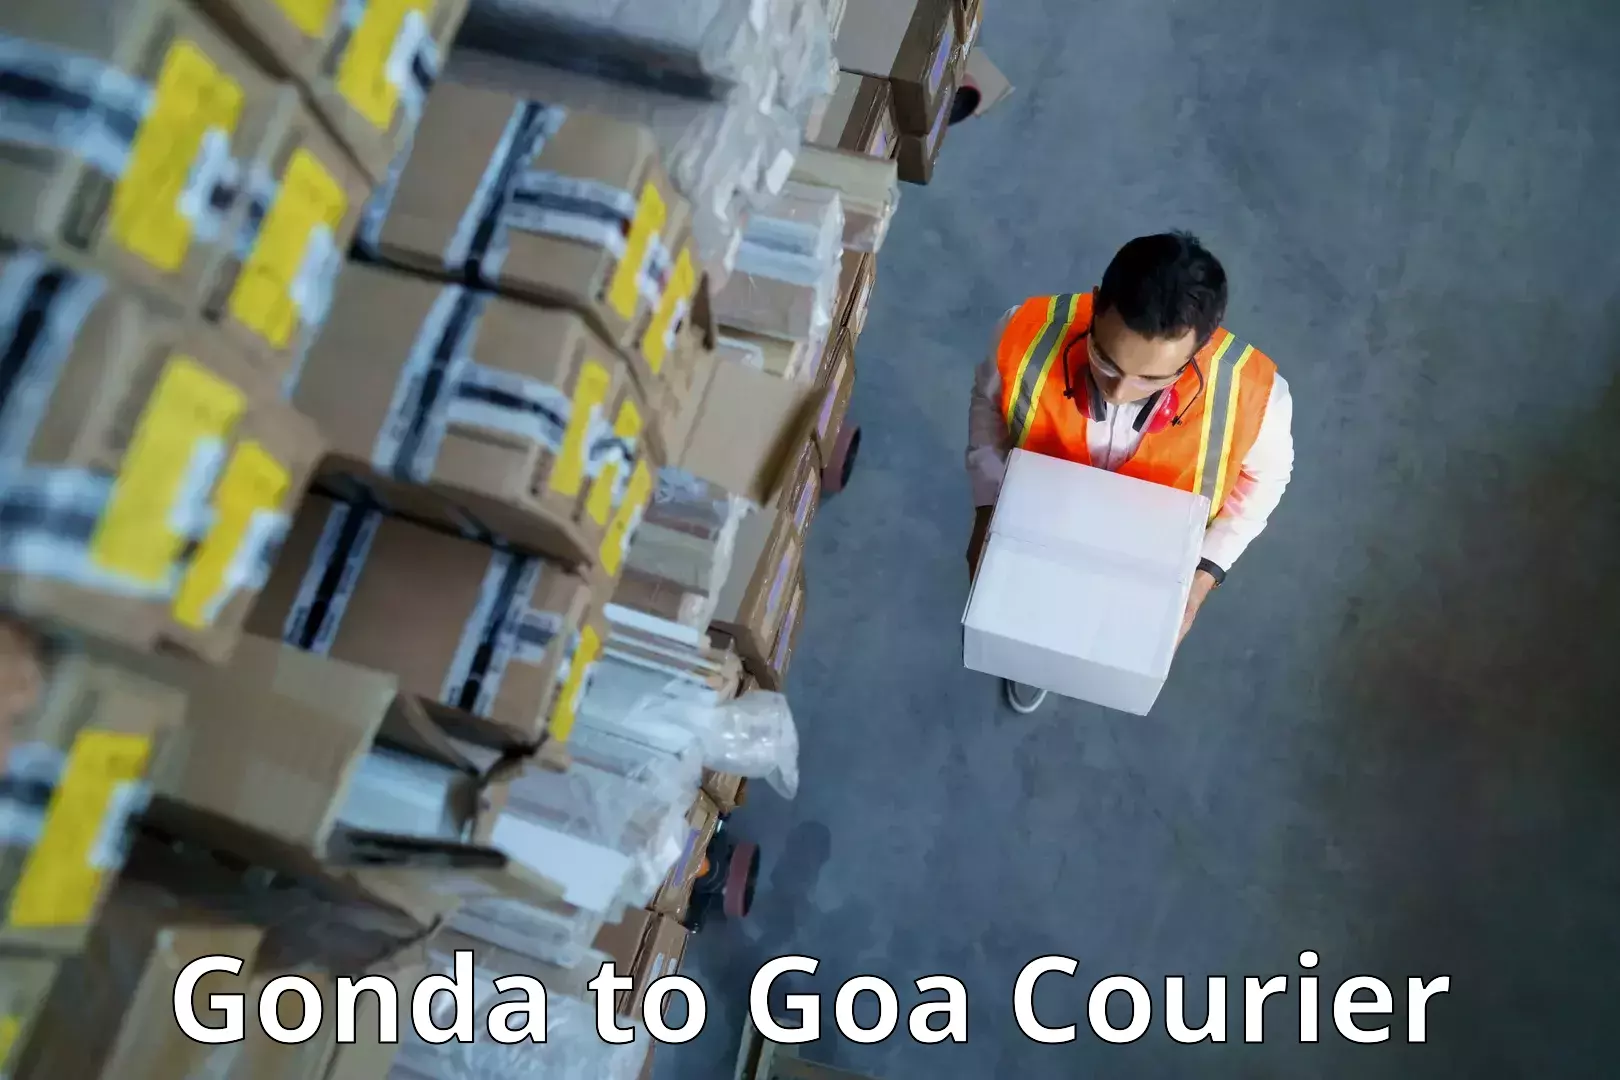 Specialized shipment handling Gonda to Ponda